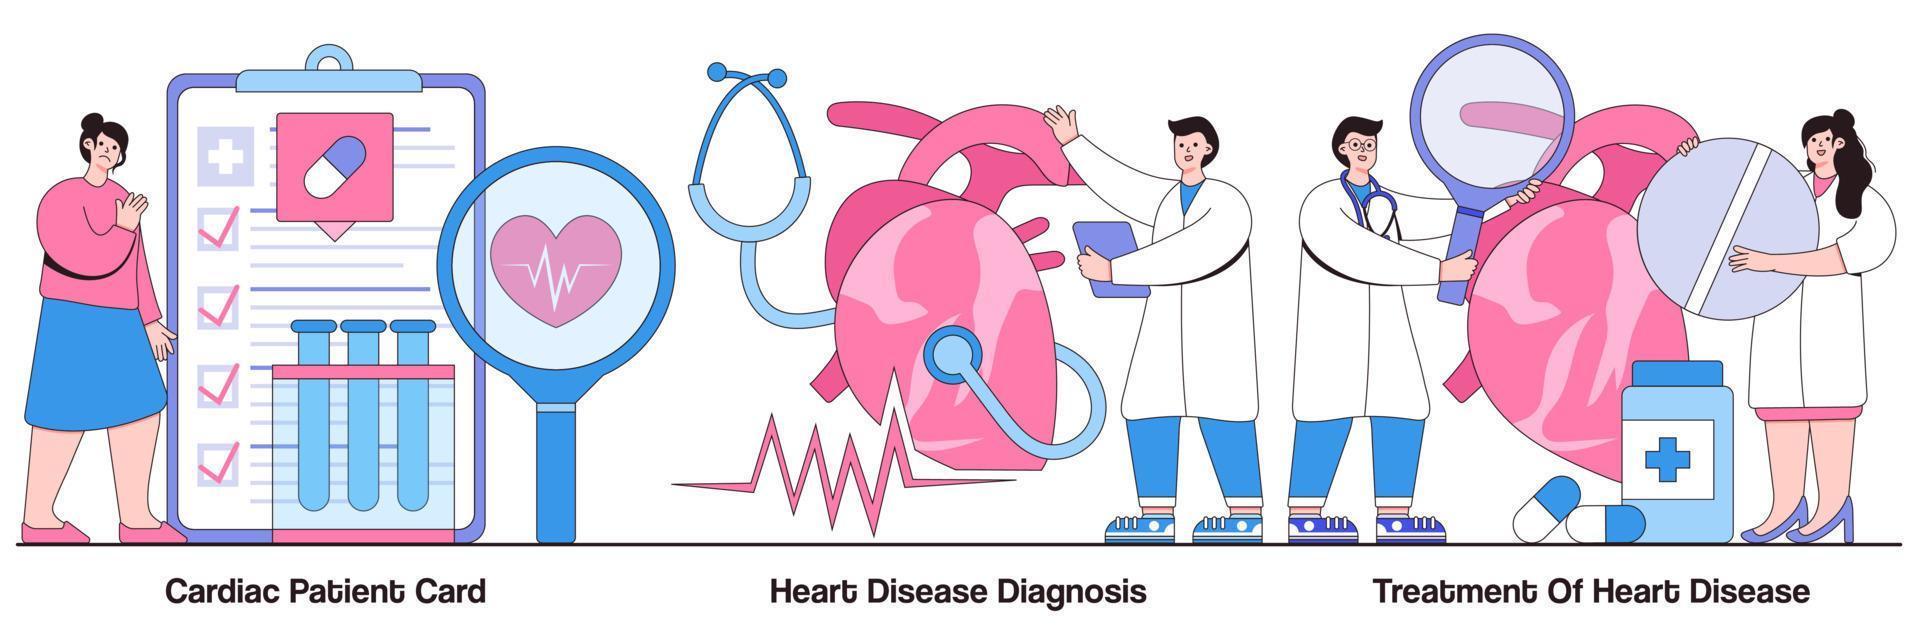 paciente cardíaco, diagnóstico de doença cardíaca e pacote ilustrado de tratamento vetor